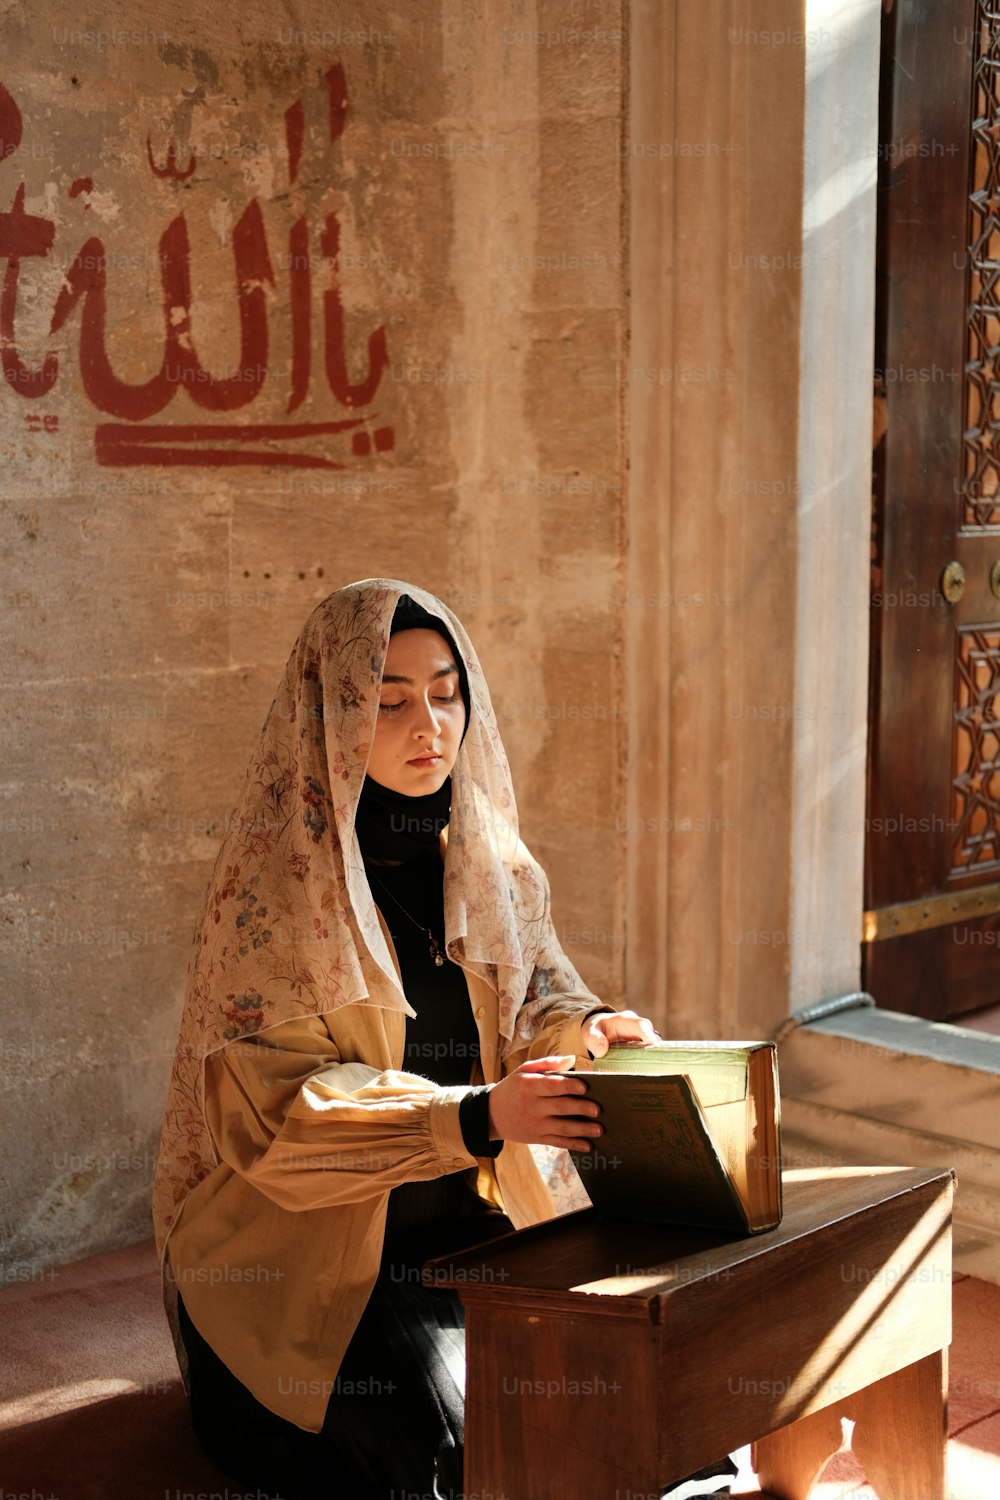 Una mujer sentada en un banco leyendo un libro